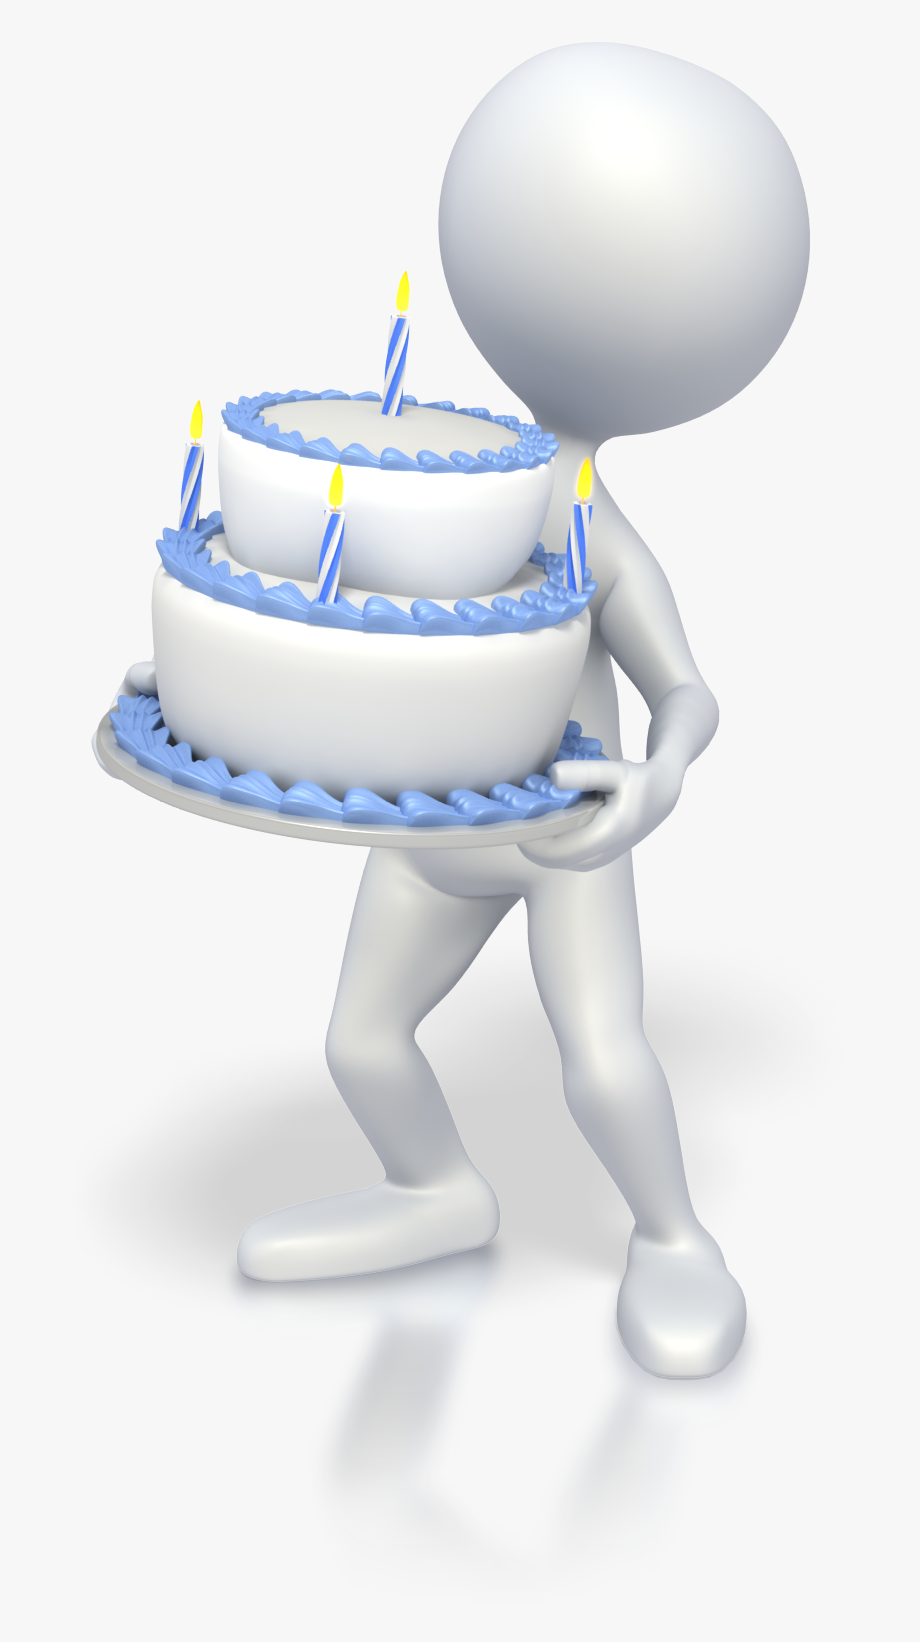 Сегодня, 16 июня, CTG отмечает день рождения!